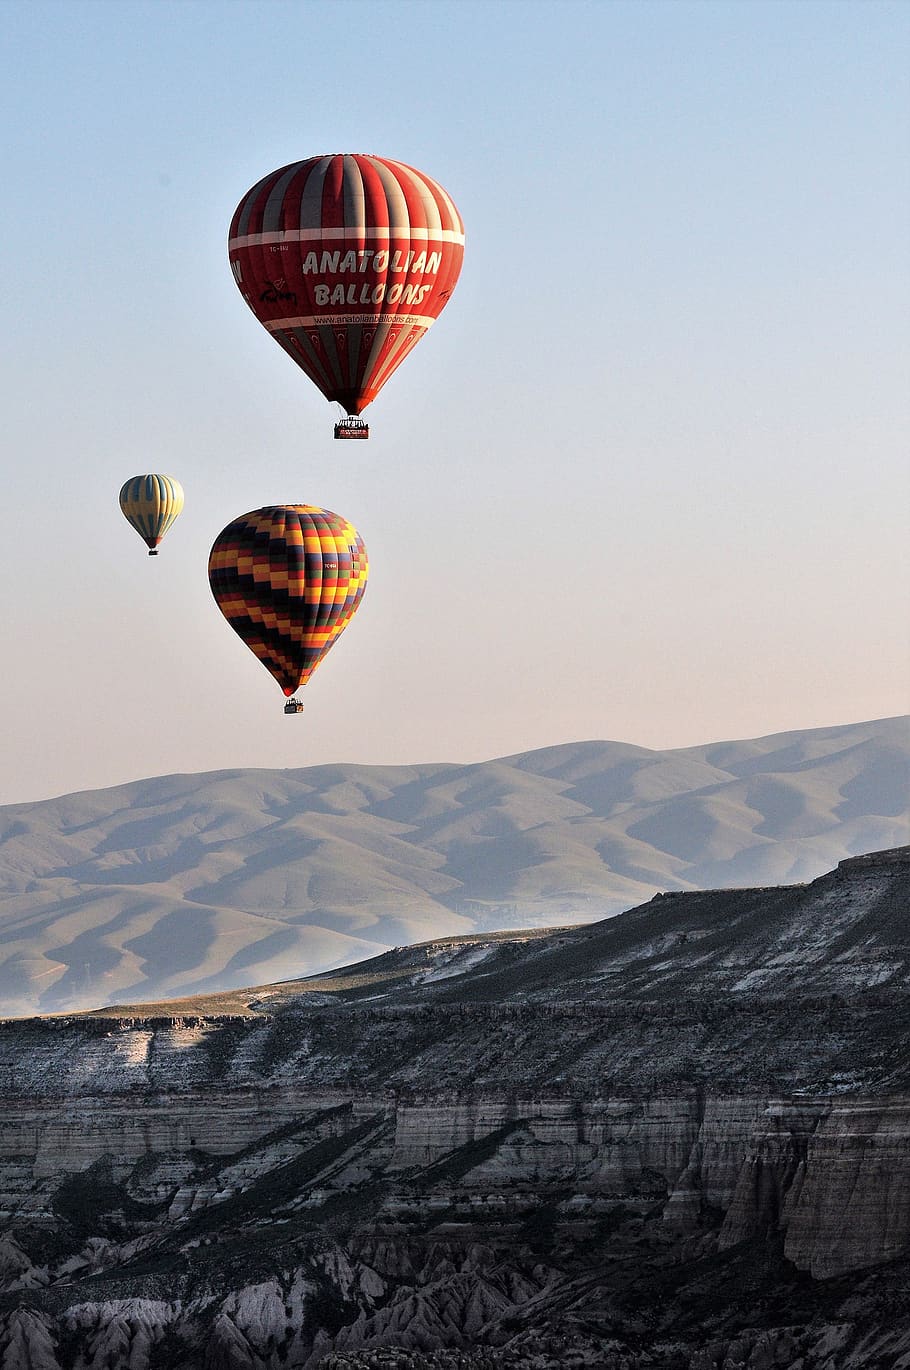 Balon udara turki